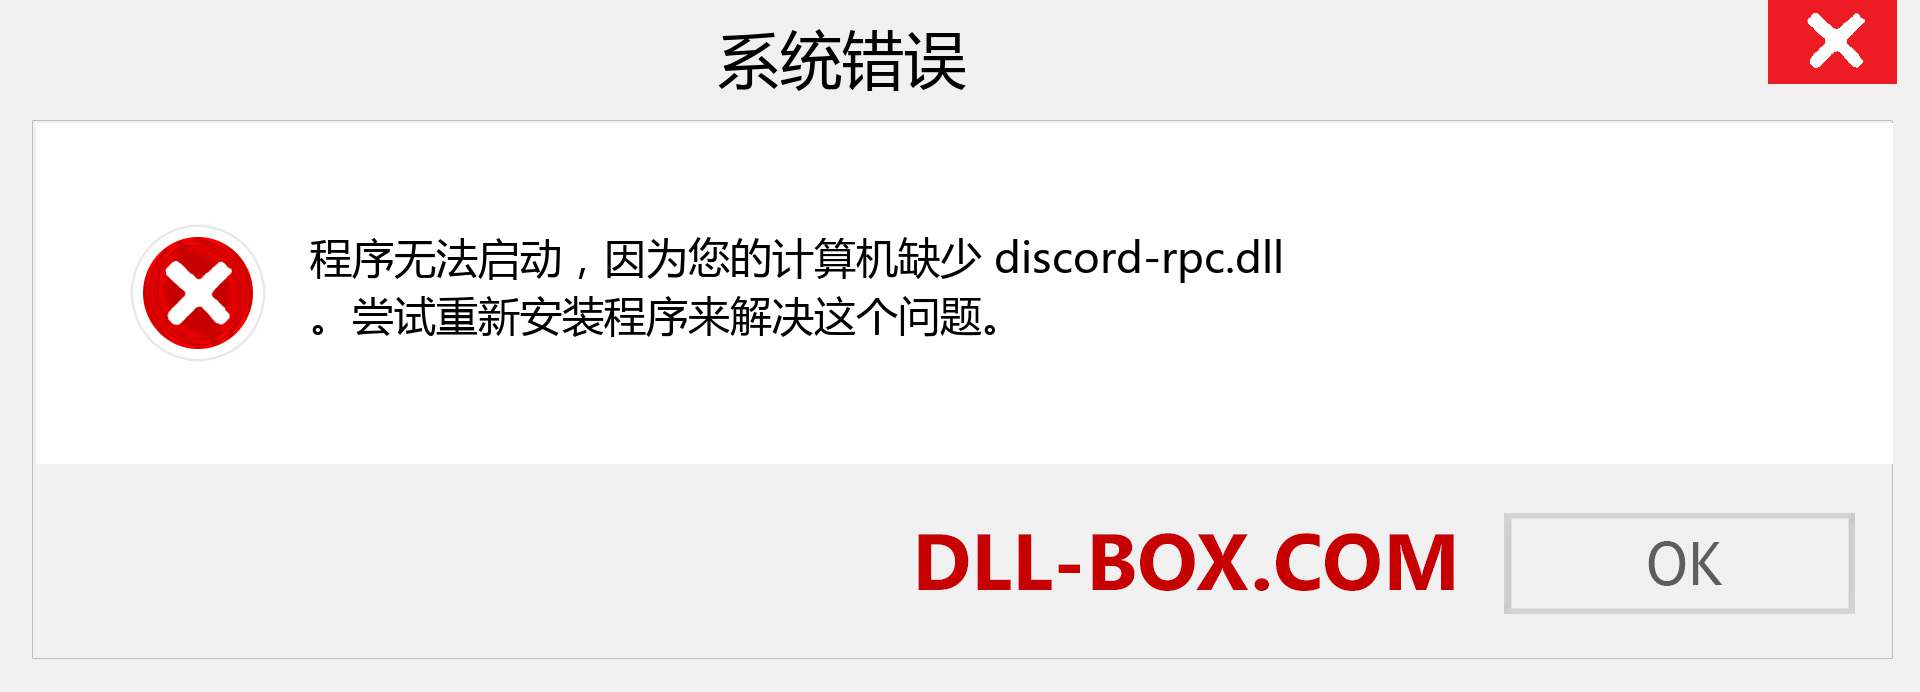 discord-rpc.dll 文件丢失？。 适用于 Windows 7、8、10 的下载 - 修复 Windows、照片、图像上的 discord-rpc dll 丢失错误